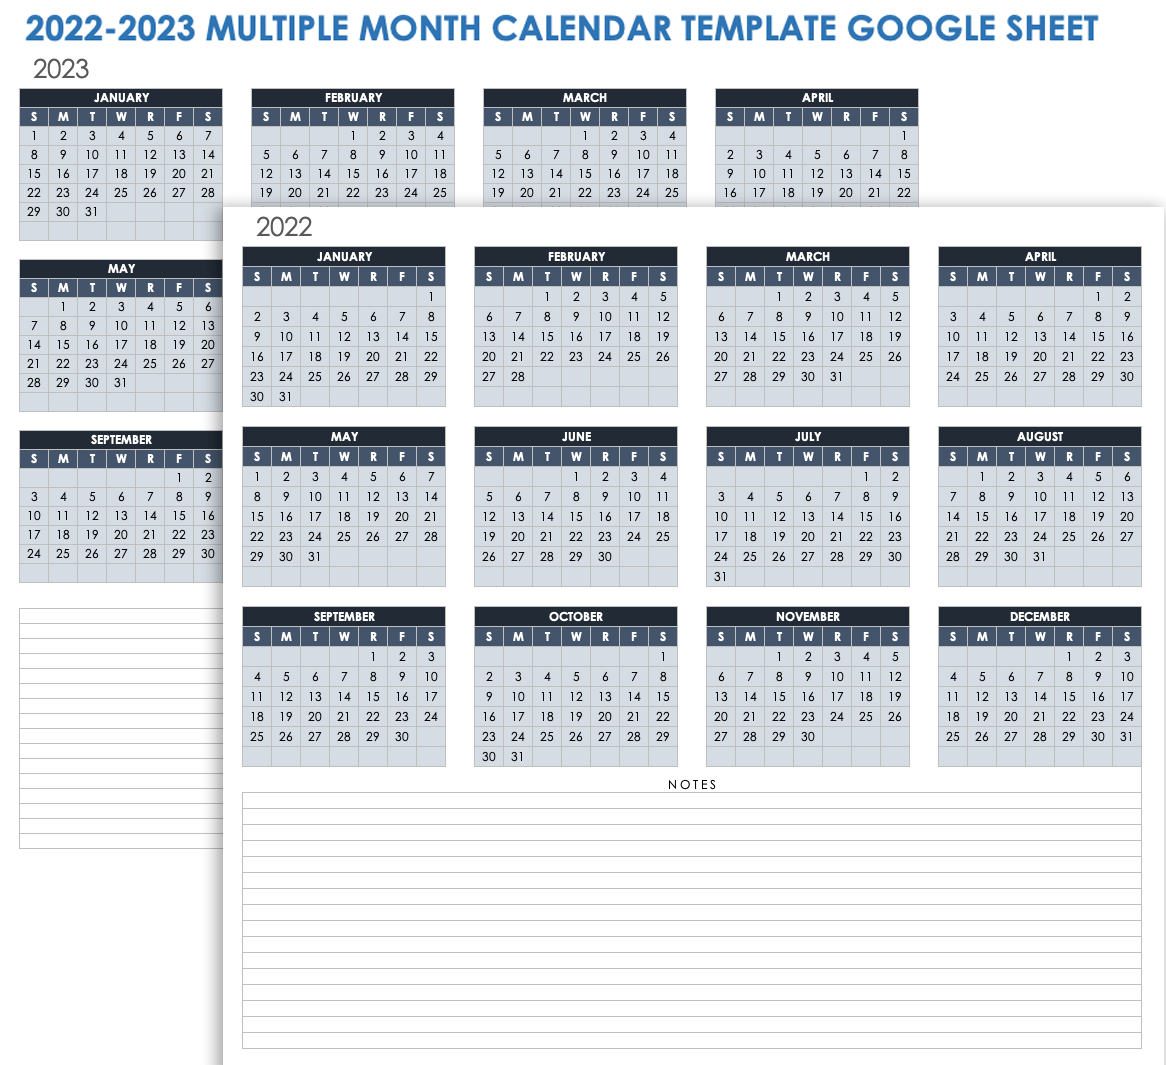 2022 2023 Multiple-Month Calendar Google Sheet Template